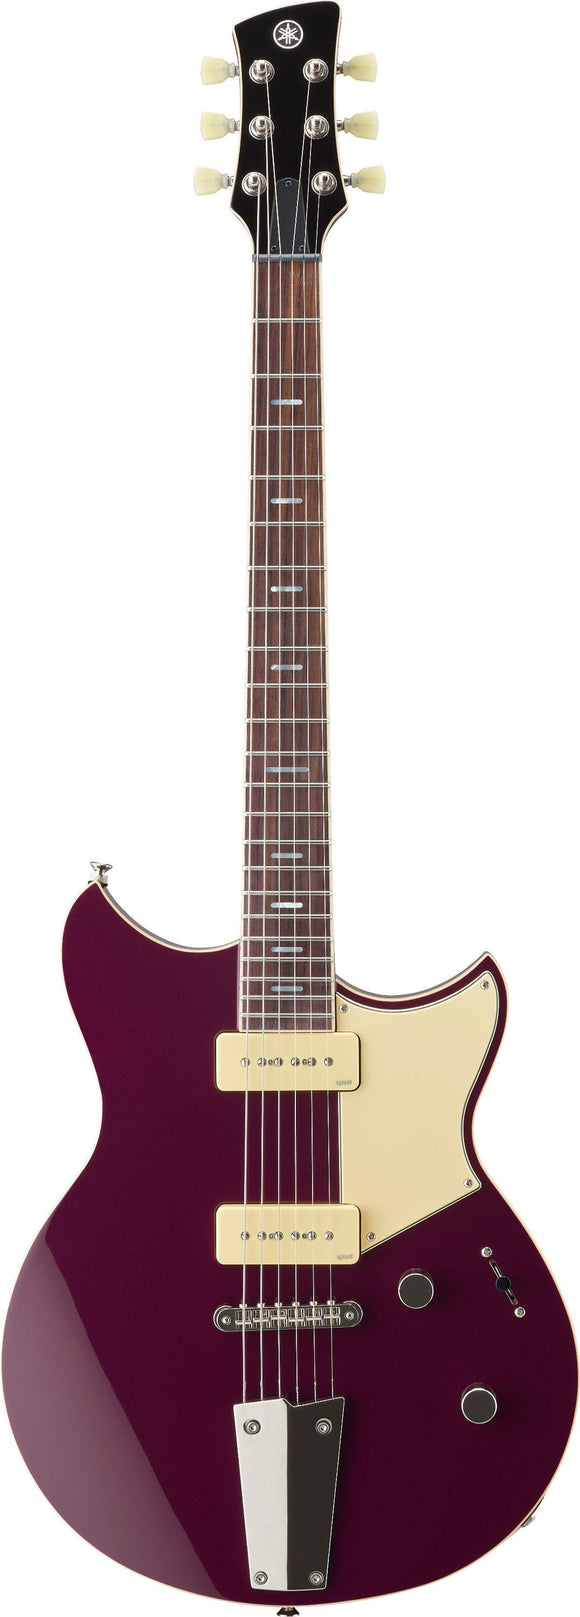 Yamaha Revstar RSS02T Electric Guitar